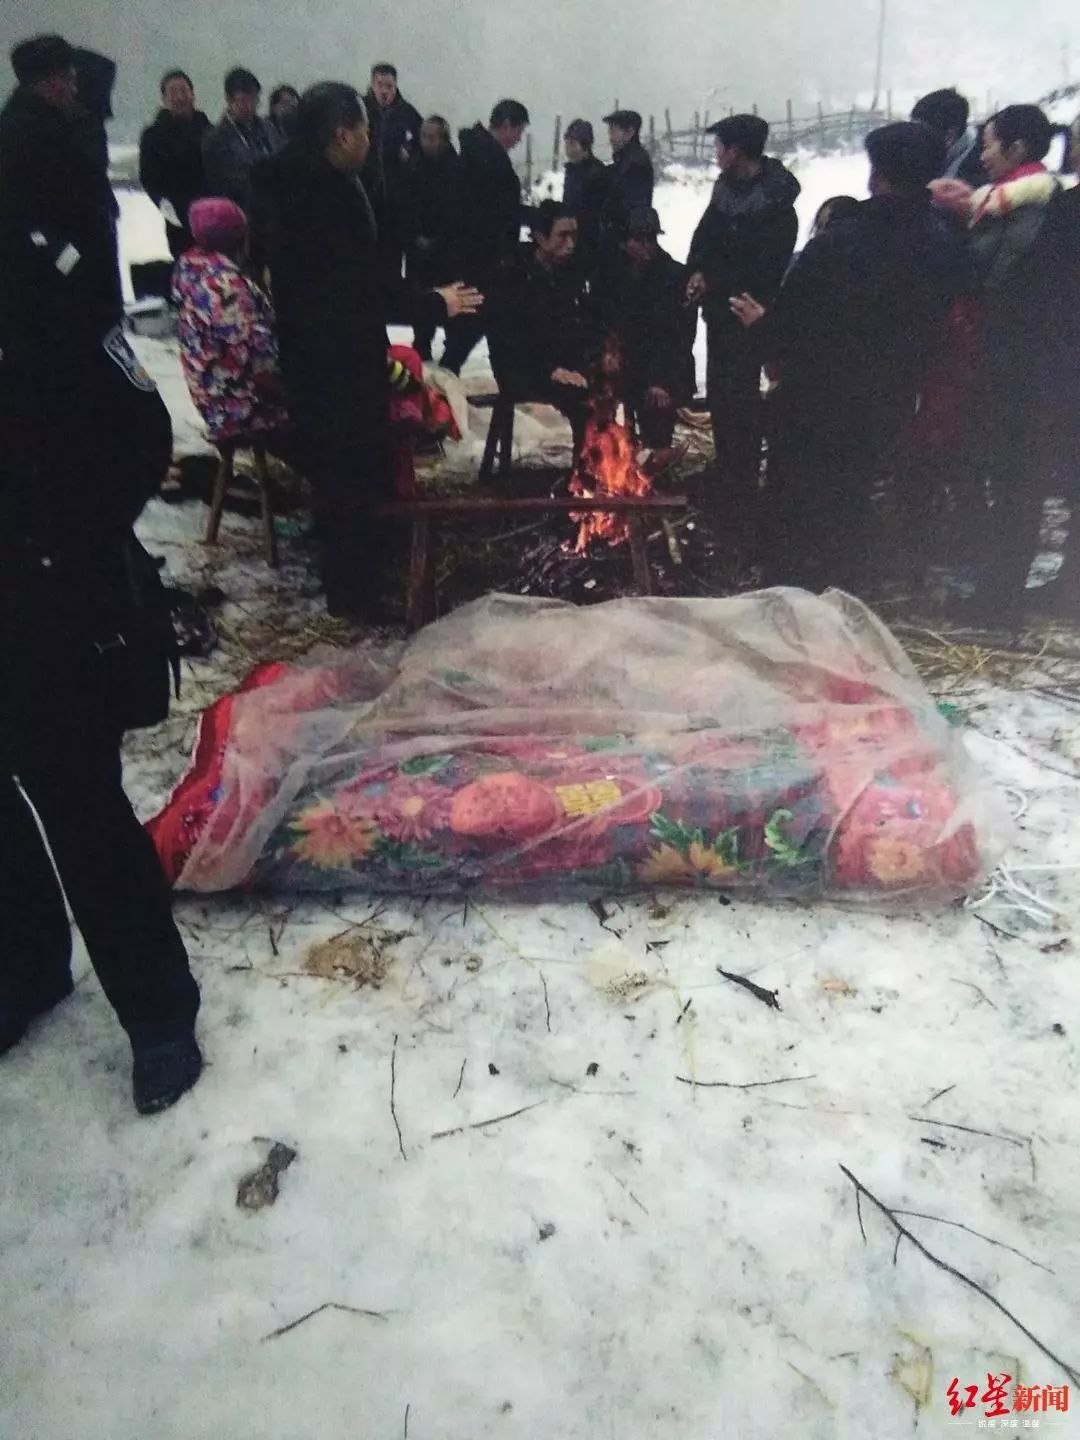 湖南2男童雪天裸死溪中,第一次尸检排除他杀,警方称系自主脱衣冻死